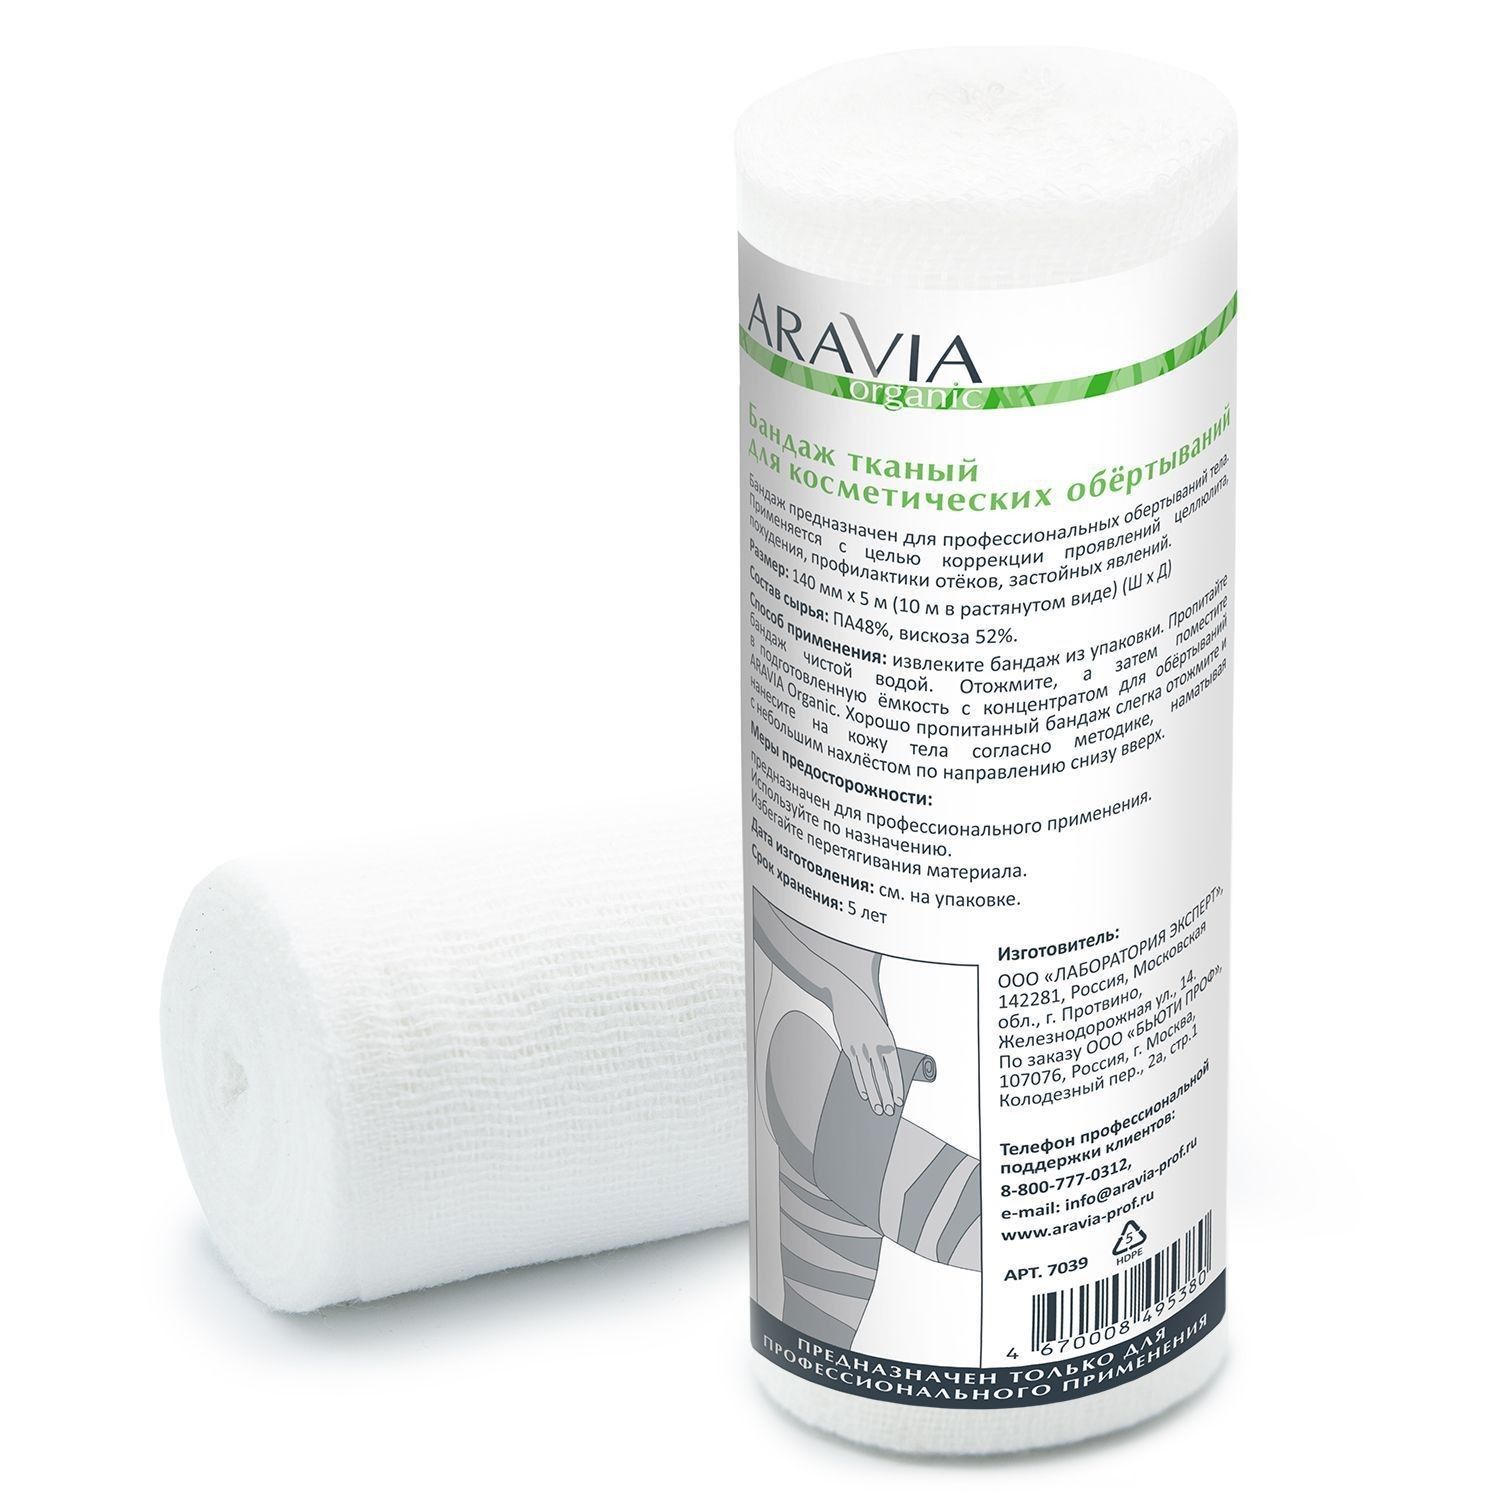 Бандаж для косметических обертываний Aravia Professional тканный 14 см x 10 м тканый бандаж для косметических обертываний 14 см 10 м